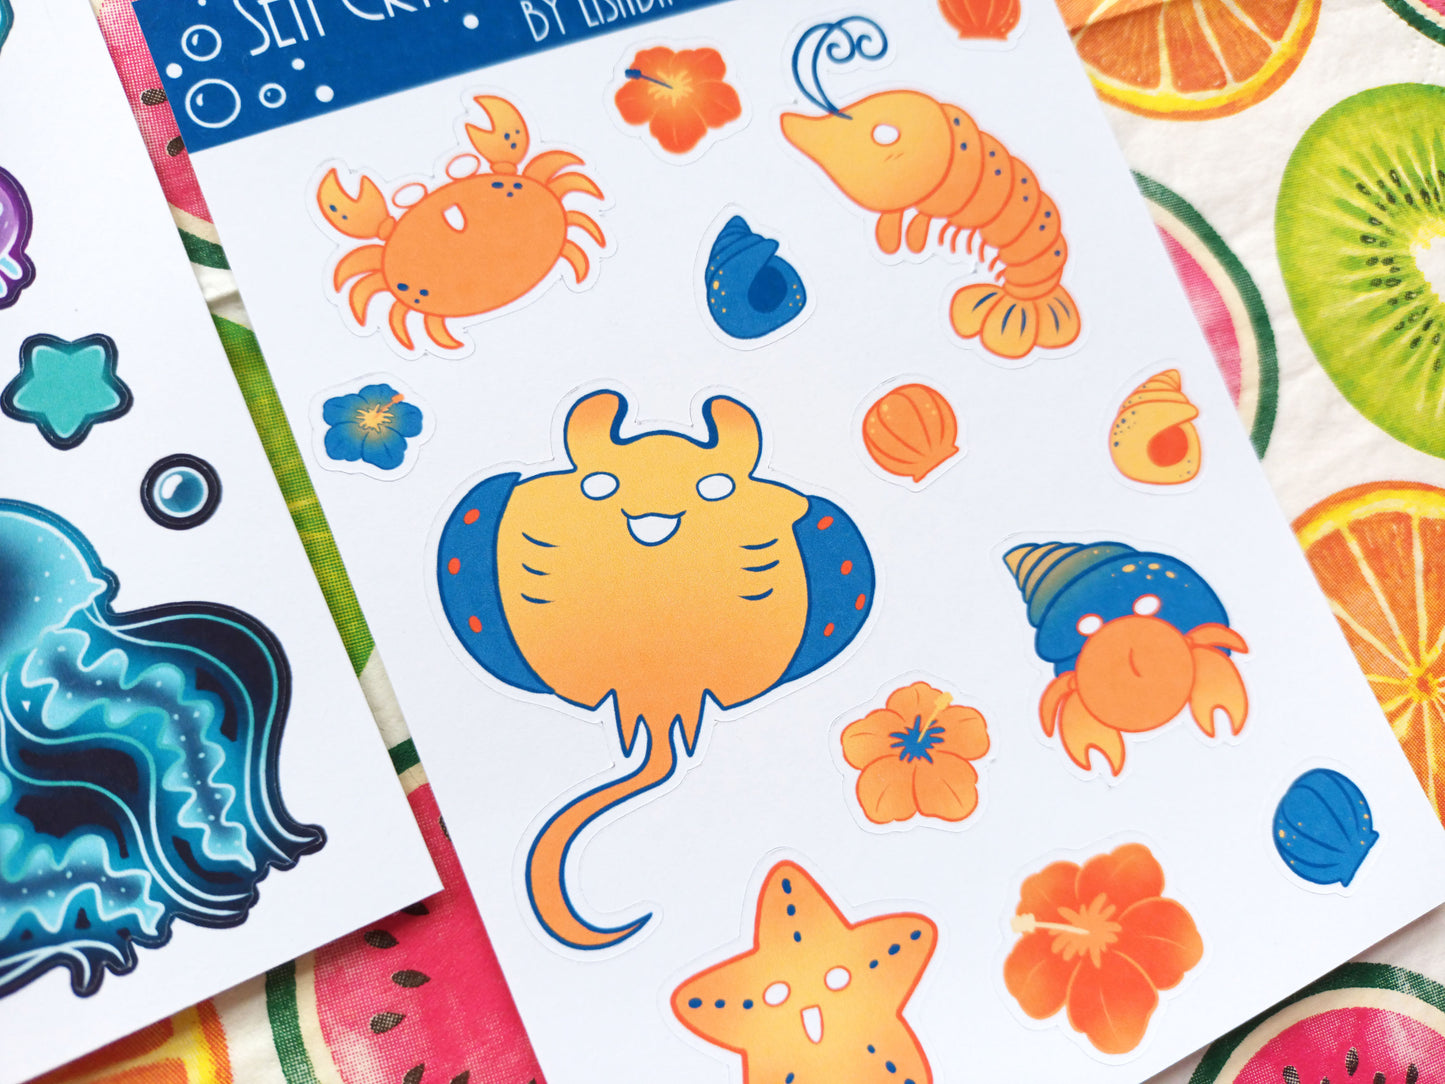 Sea Critters Kawaii Themed Journal Sticker Sheets